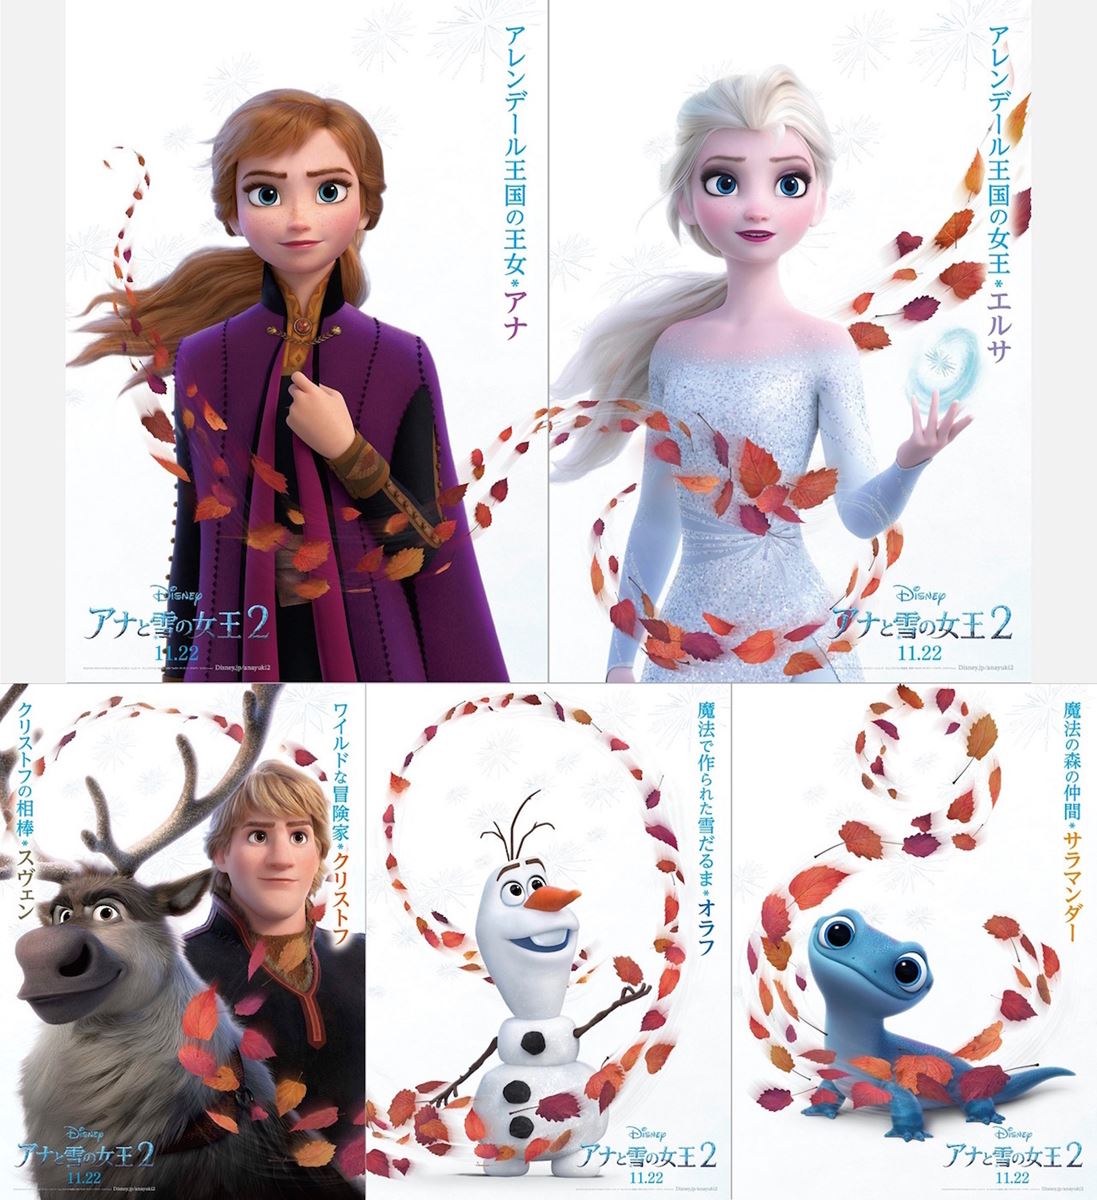 アナと雪の女王2 新キャラクターが登場 日本オリジナルポスター発表 マピオンニュース